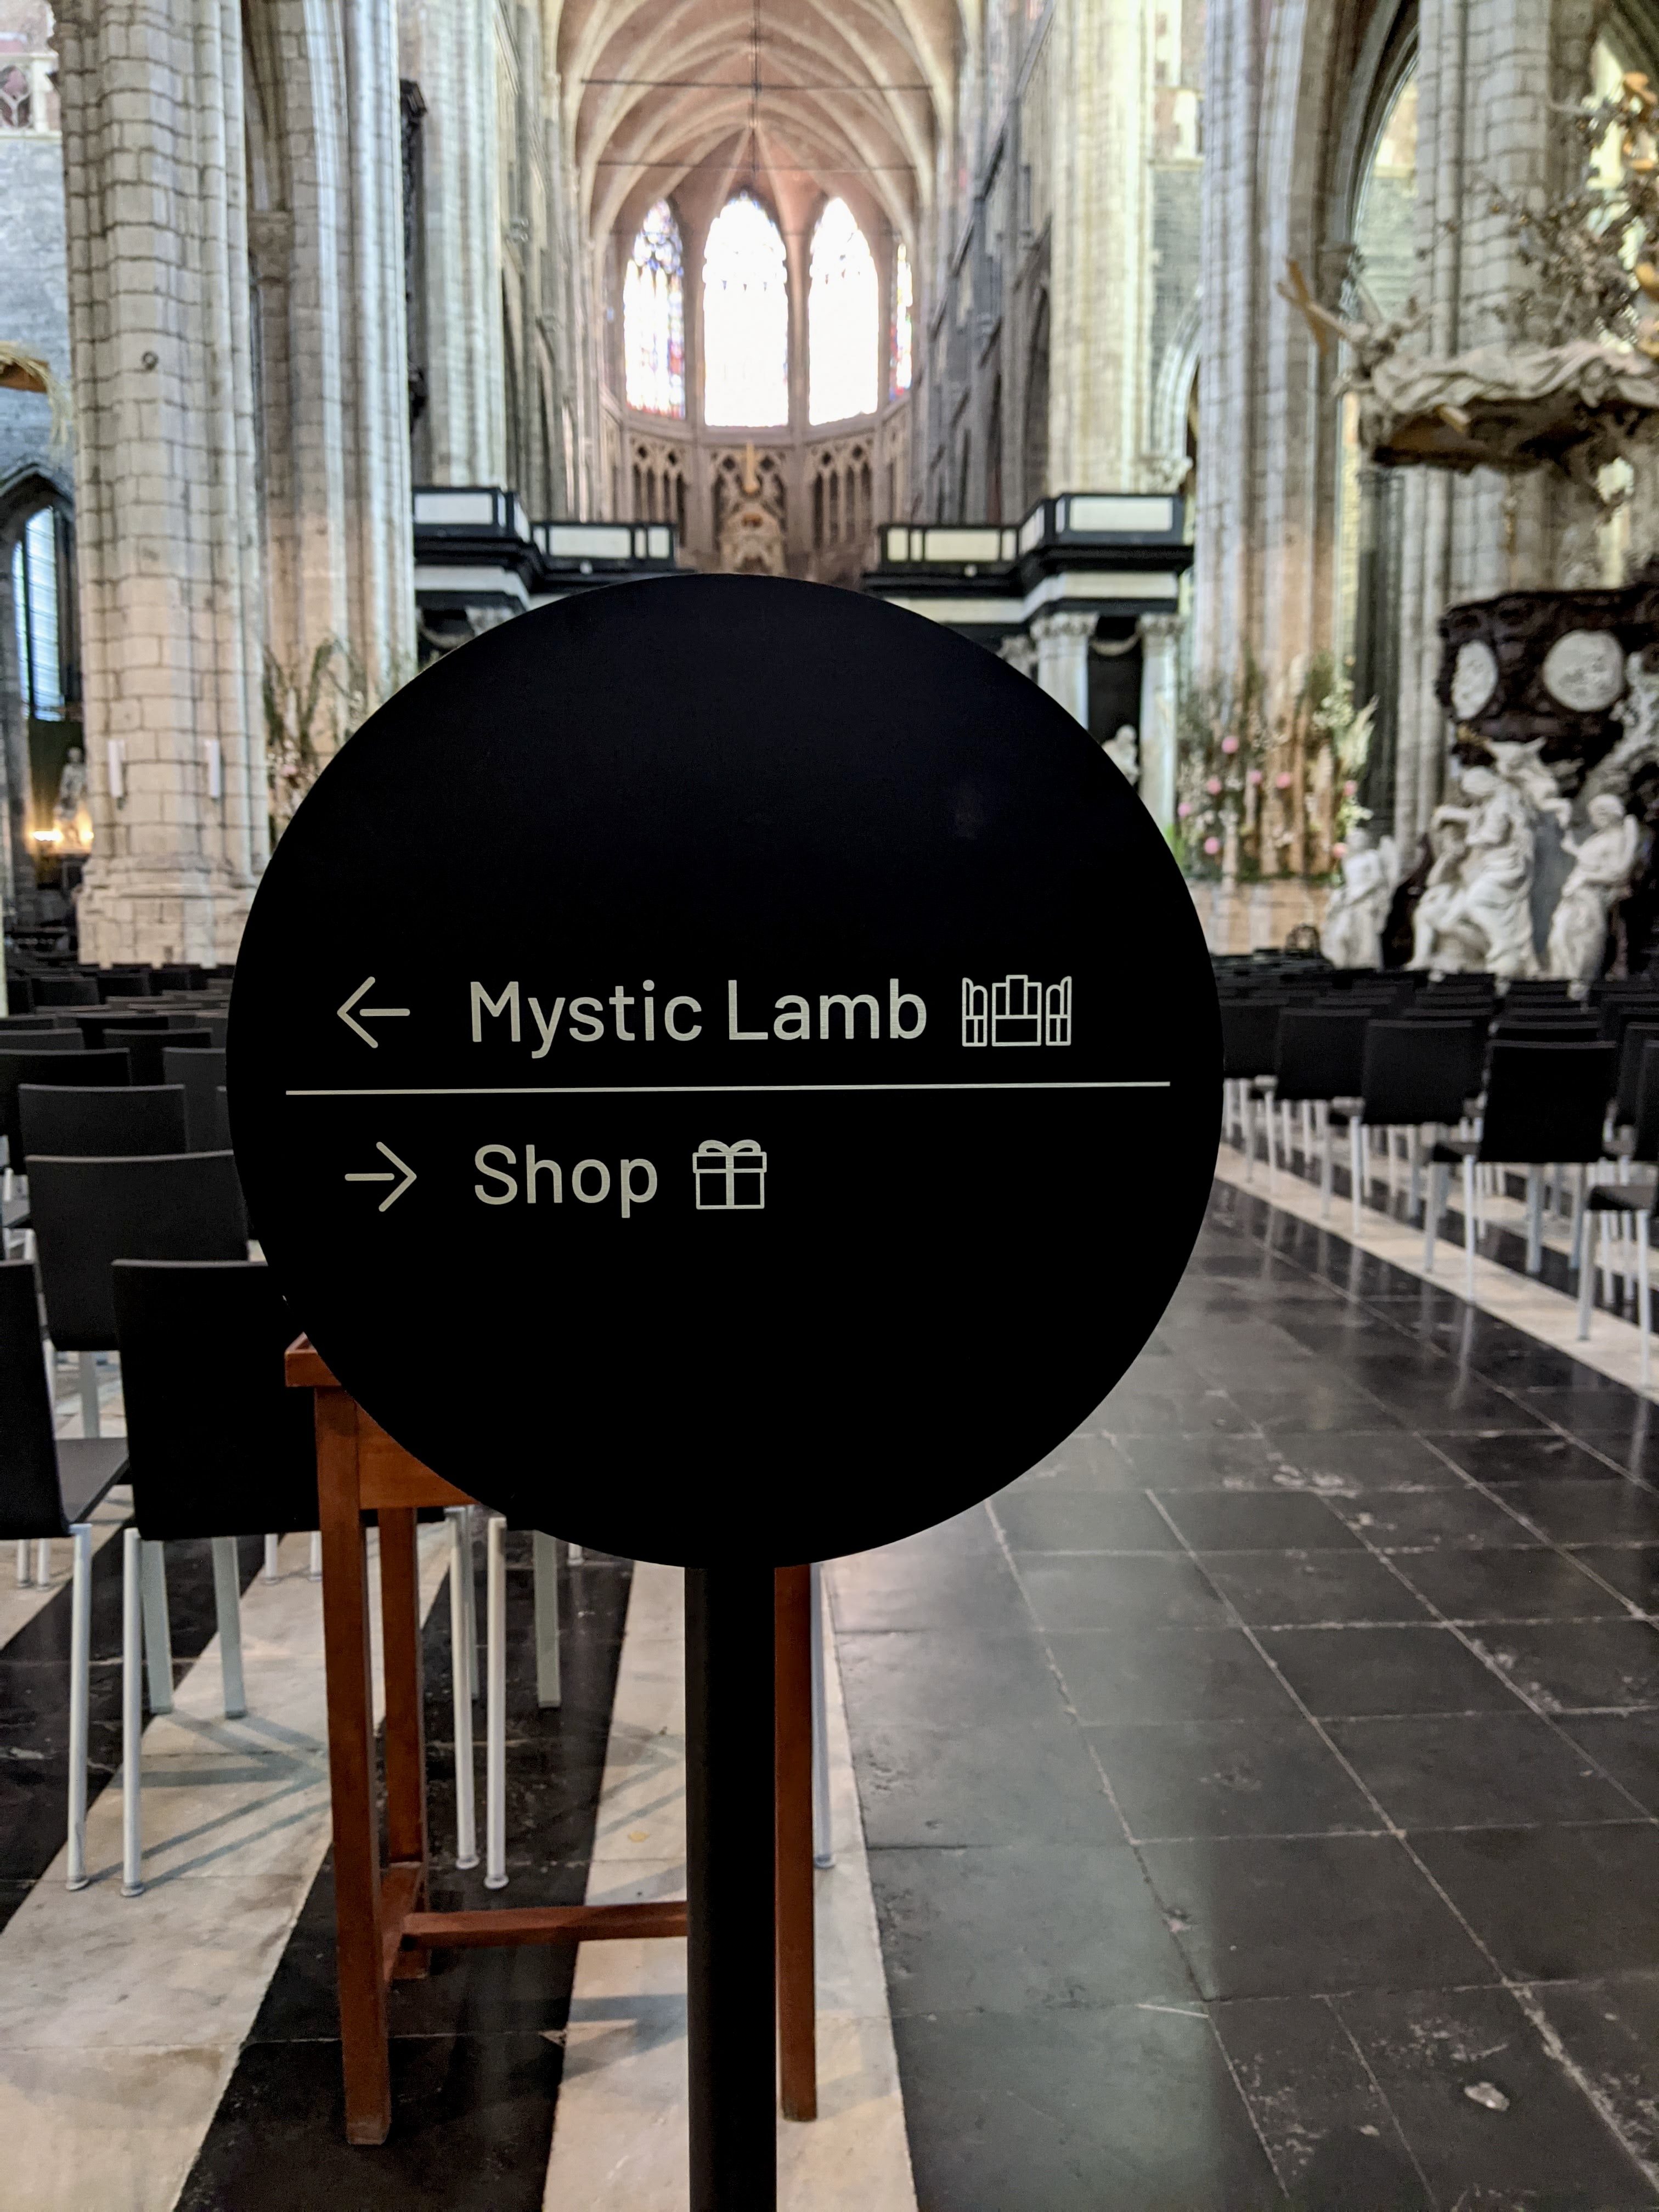 Mystic lamb